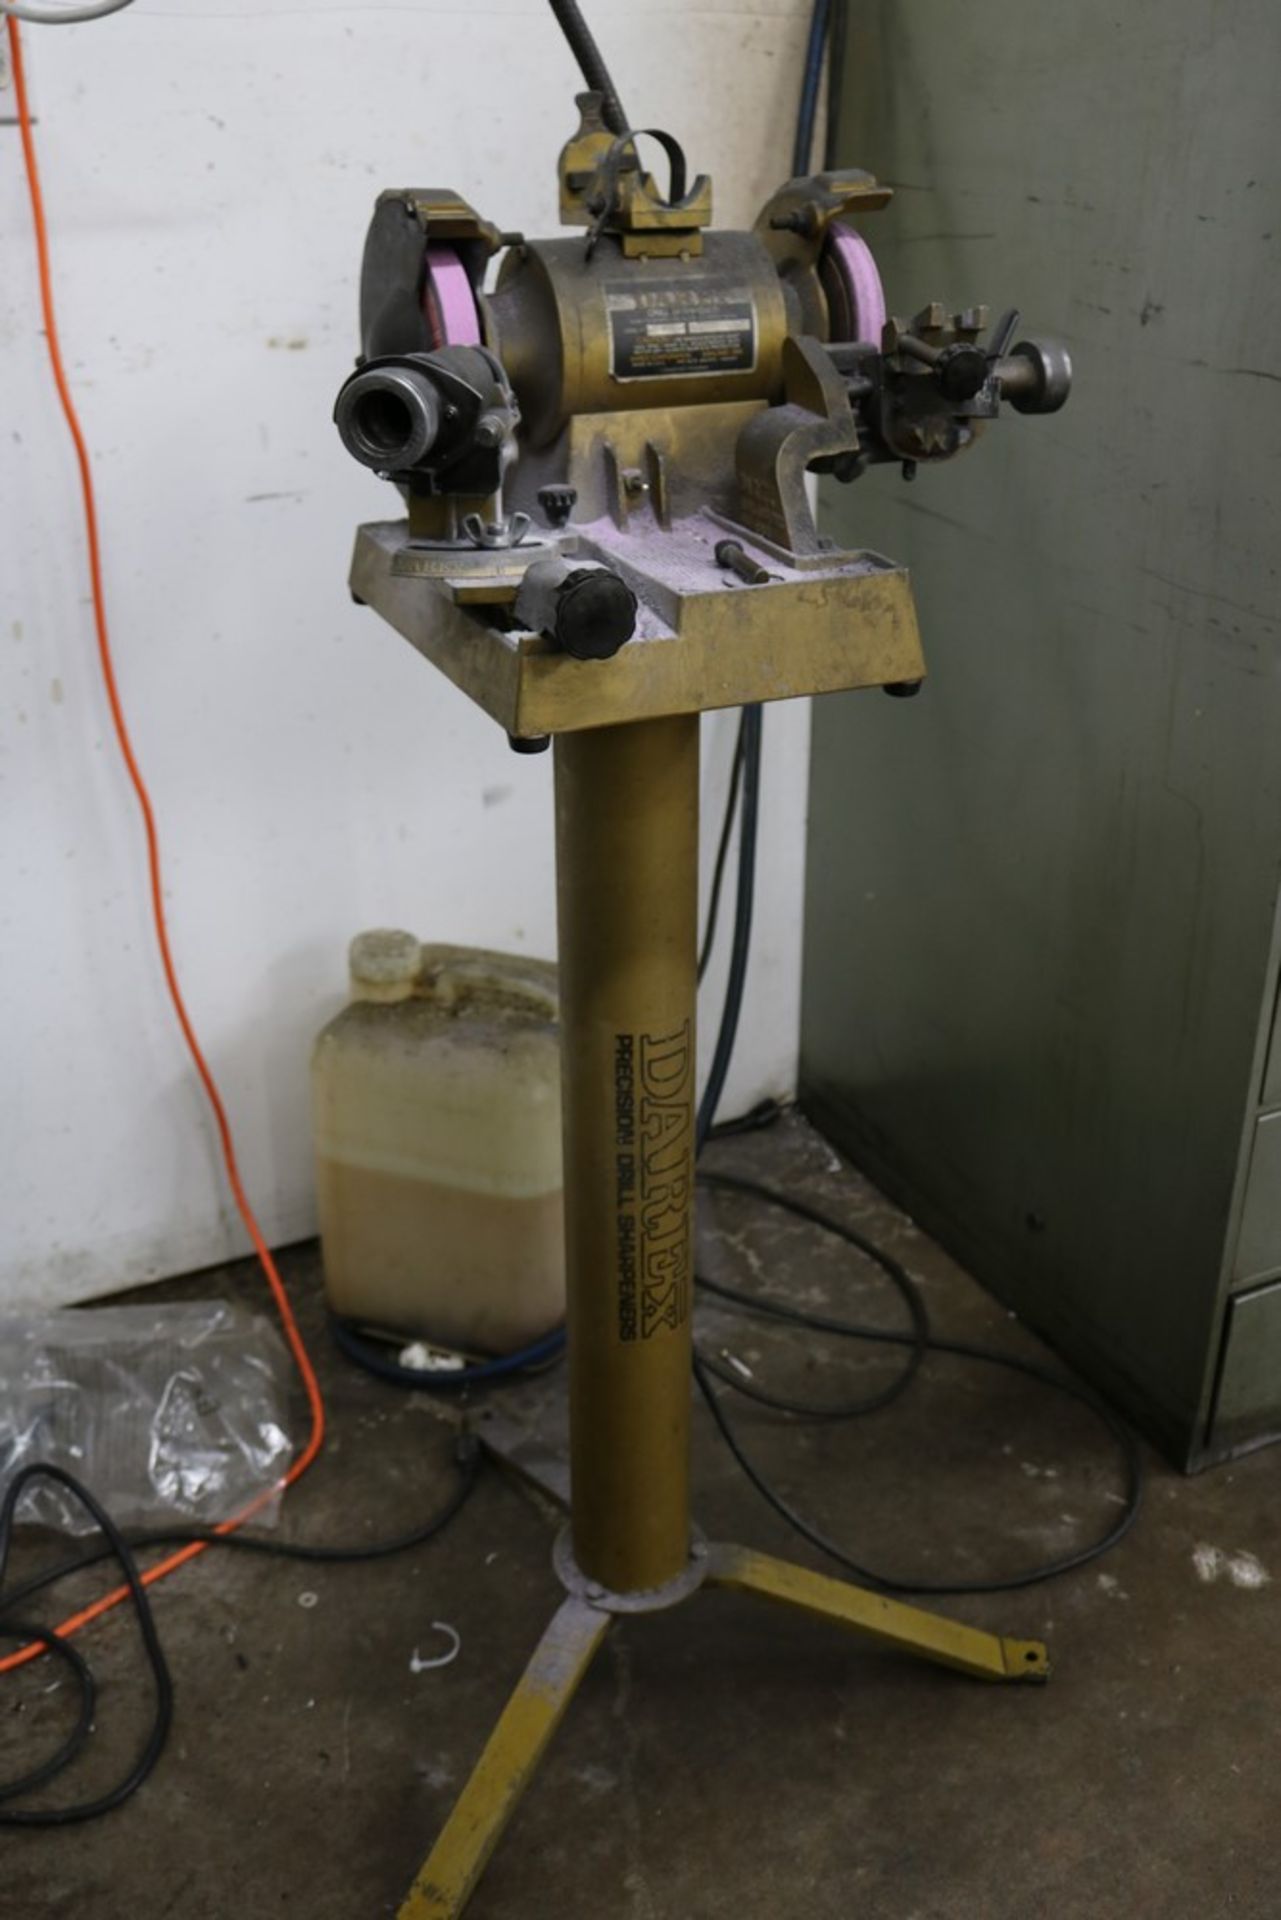 Darex Precision Drill Sharpener, Model M3, 1/3 HP, 3450 RPM on Darex Heavy Duty Stand